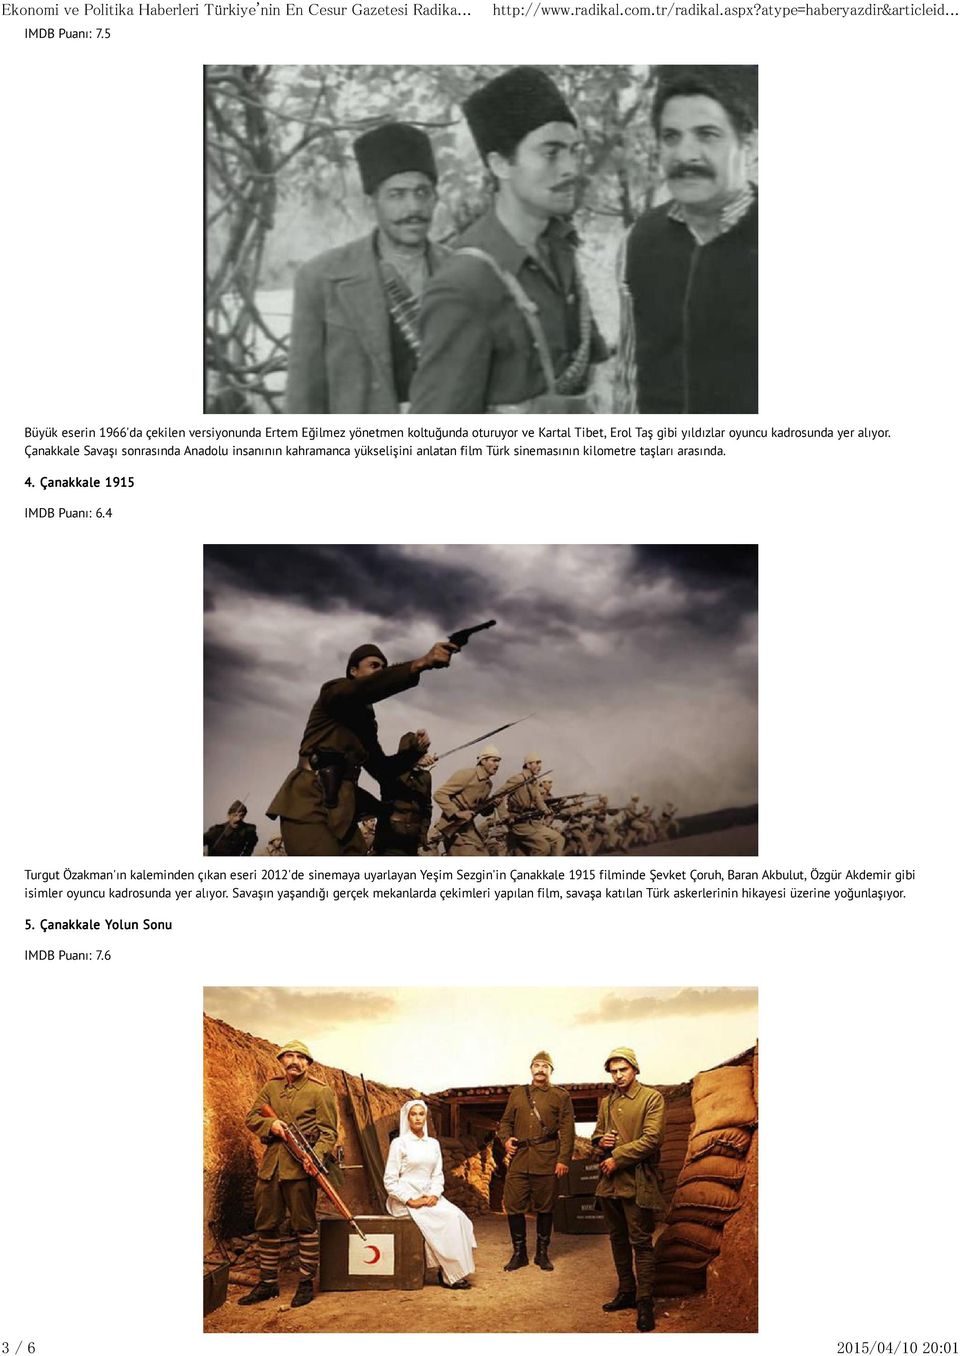 Çanakkale Savaşı sonrasında Anadolu insanının kahramanca yükselişini anlatan film Türk sinemasının kilometre taşları arasında. 4. Çanakkale 1915 IMDB Puanı: 6.